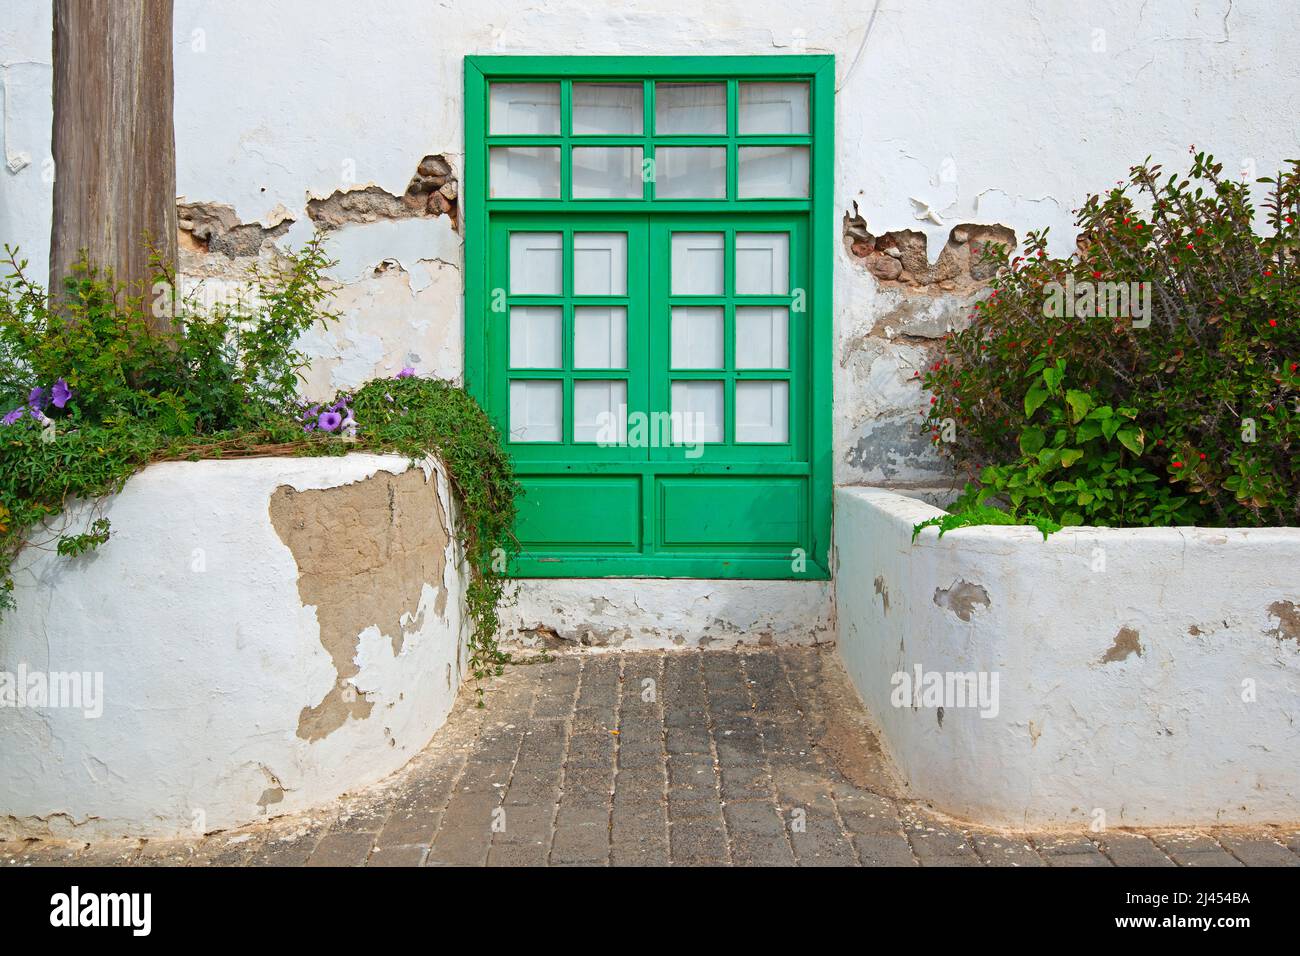 Typisches altes weißes Haus mit farbigen Türen und Fenstern, Teguise, ehemalige Hauptszadt der Insel Lanzarote, kanarische Inseln, Kanaren, Spanien Stock Photo